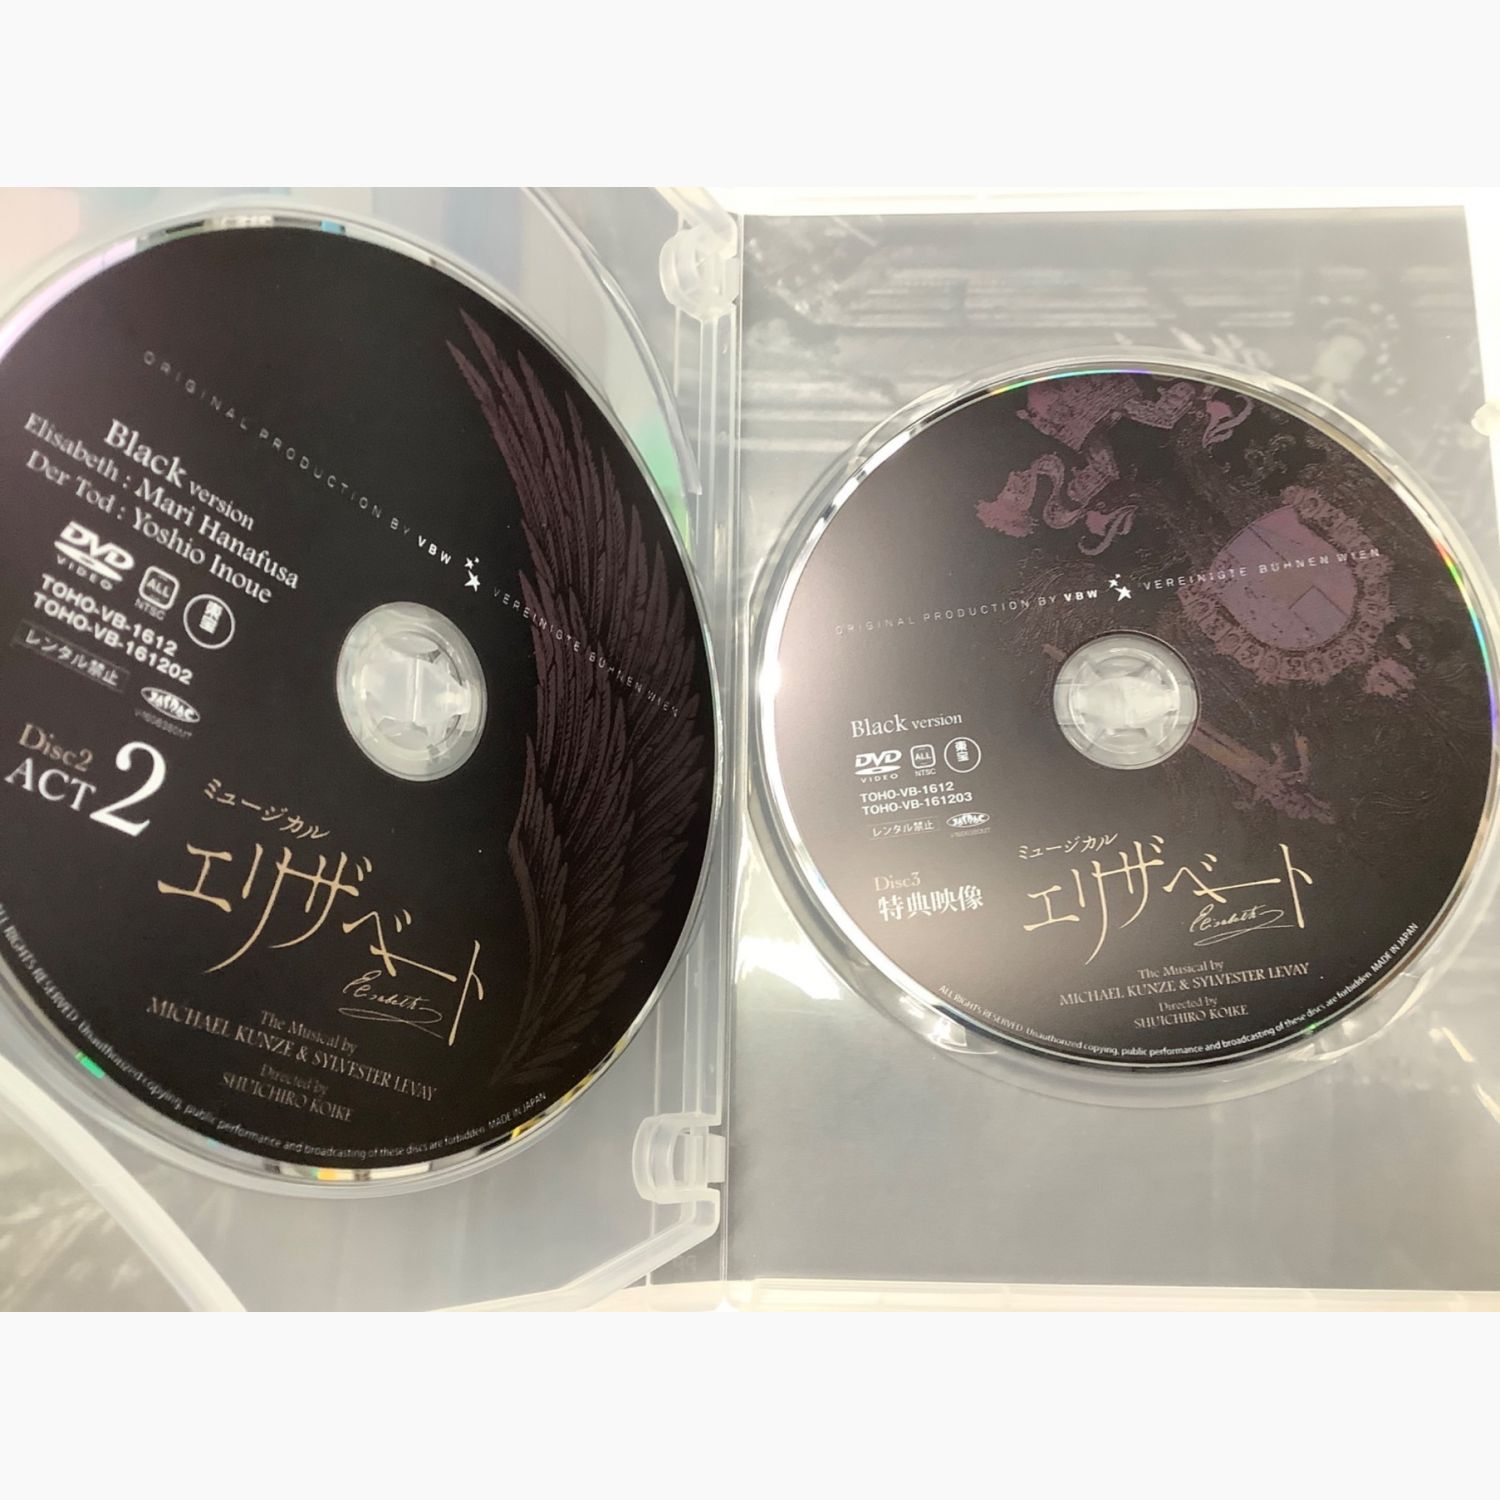 舞台/ミュージカルエリザベート DVD Black バージョン - 舞台/ミュージカル